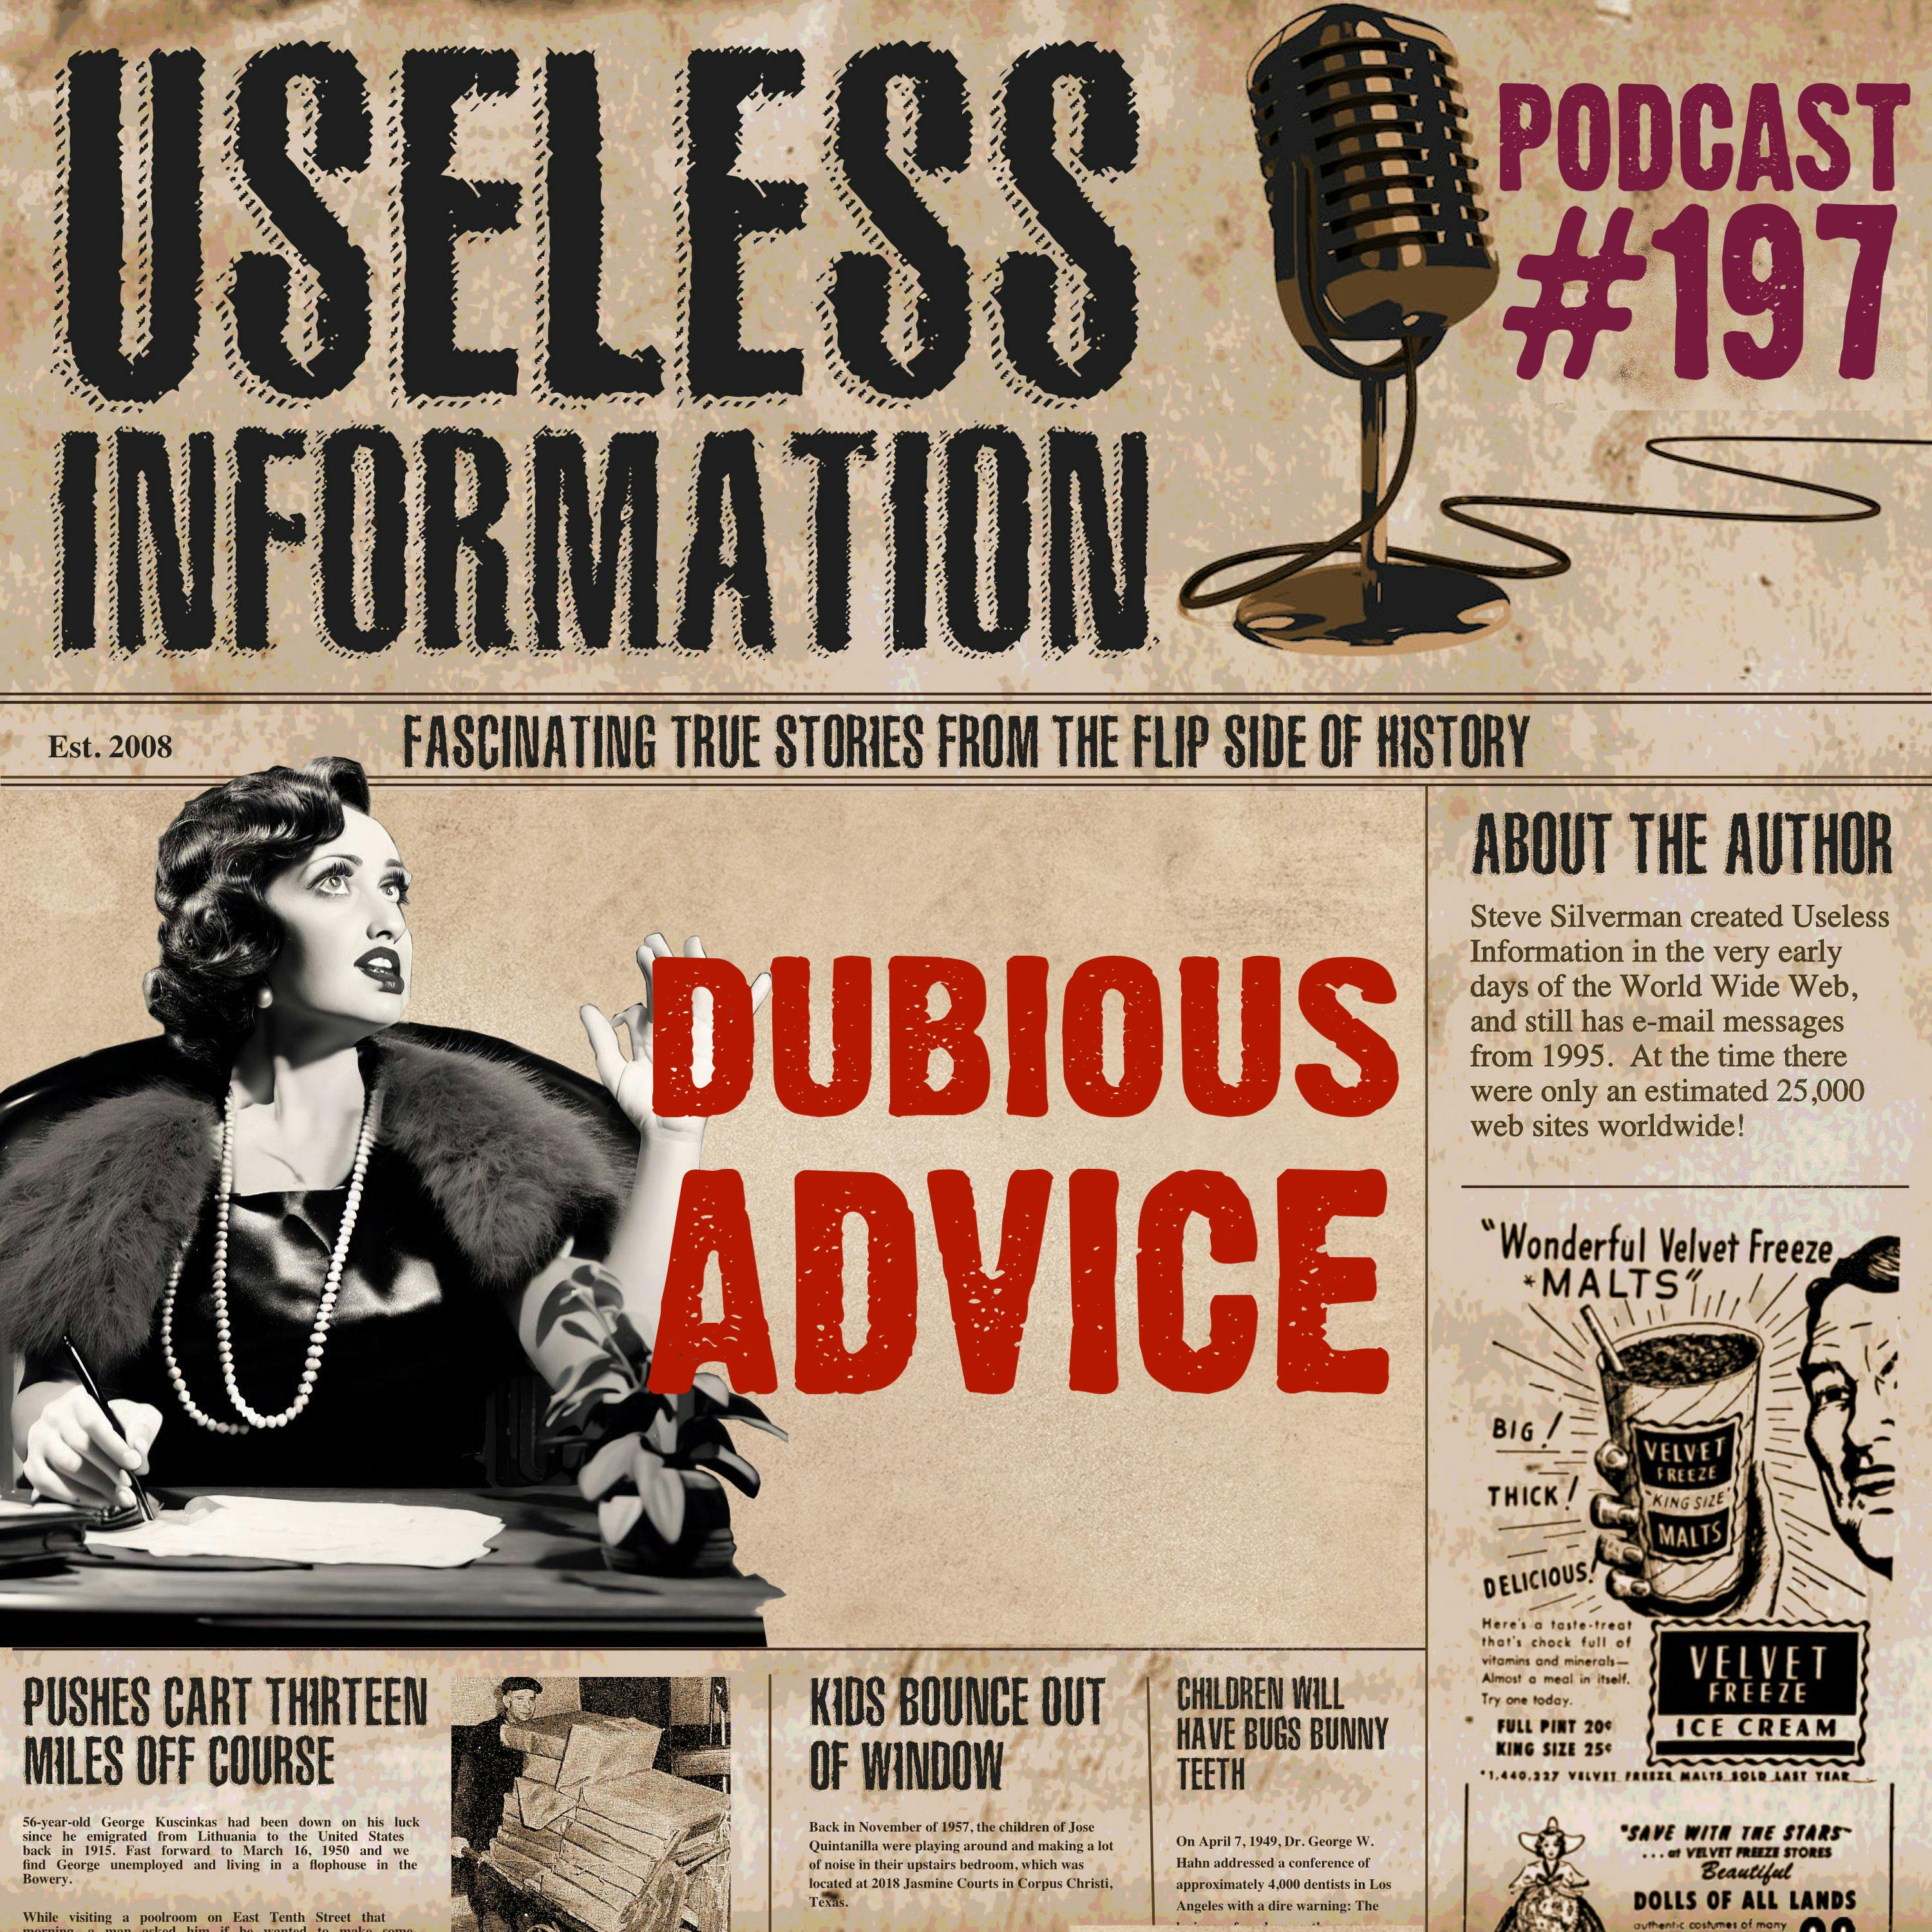 Dubious Advice - UI Podcast #197